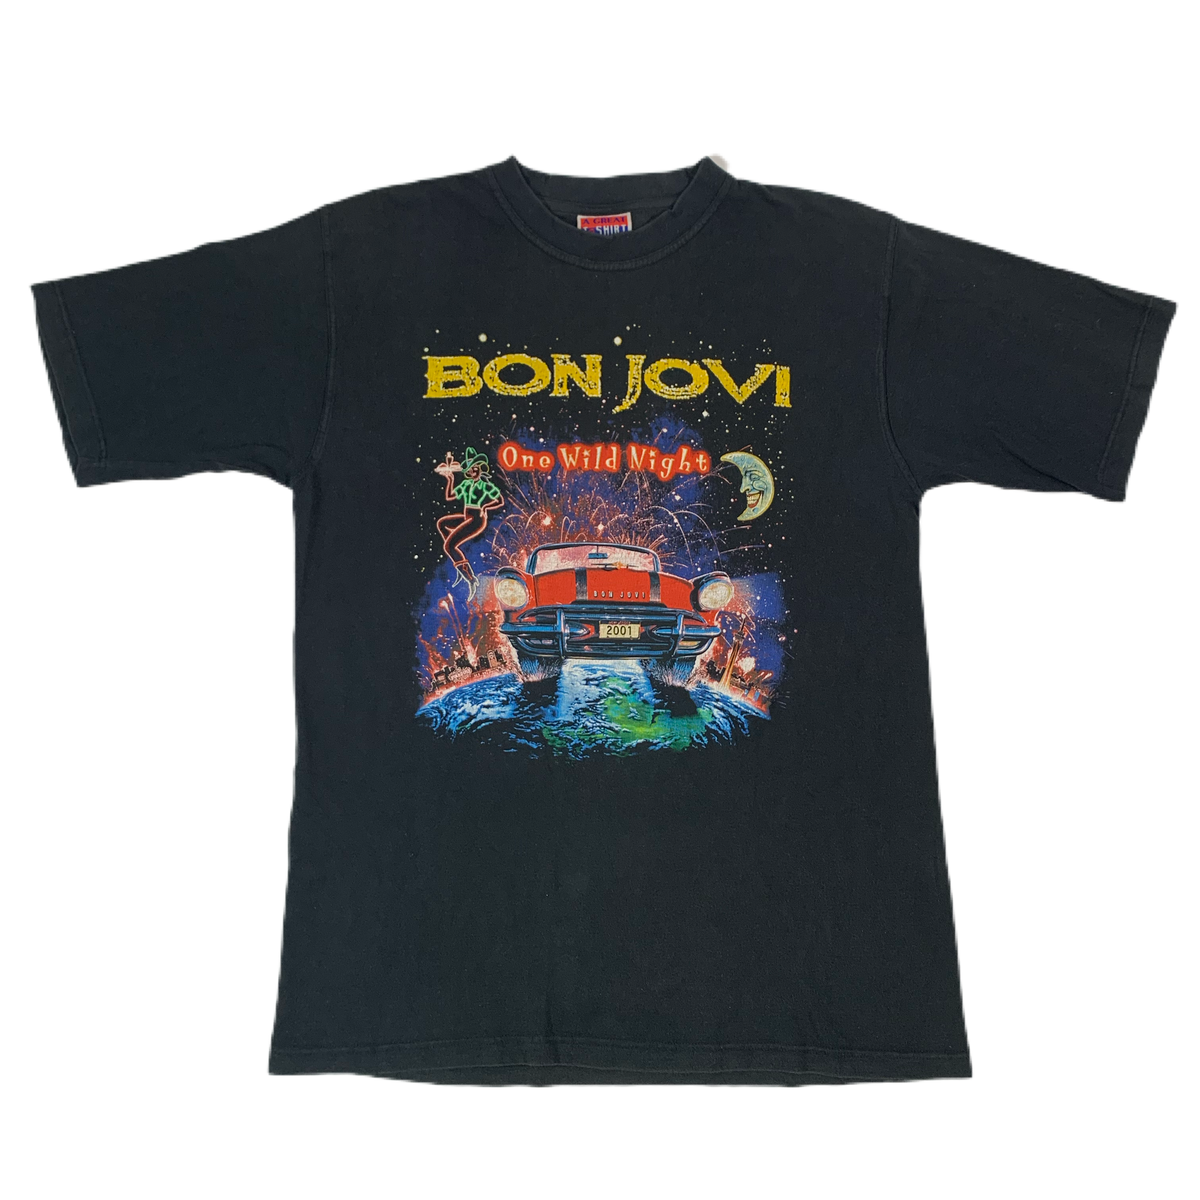 Vintage Bon Jovi “One Wild Night” T-Shirt - jointcustodydc